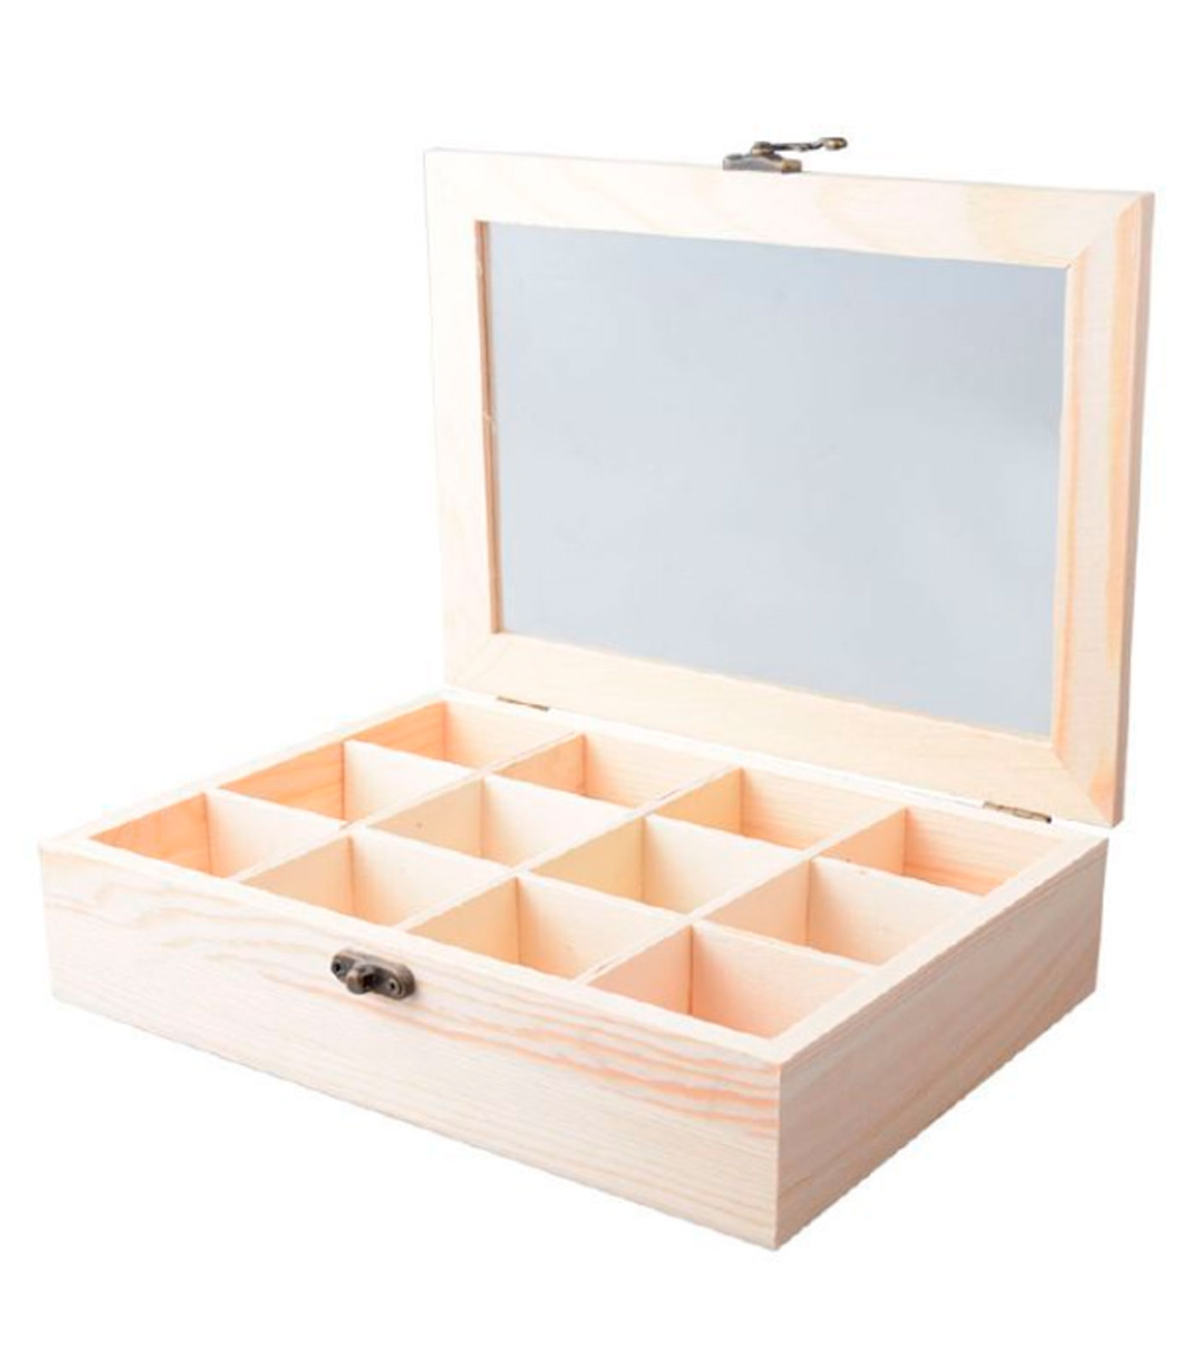 Tradineur - Caja de madera con 12 compartimentos y tapa con cristal,  joyero, expositor de joyas, organizador, collares, anillos